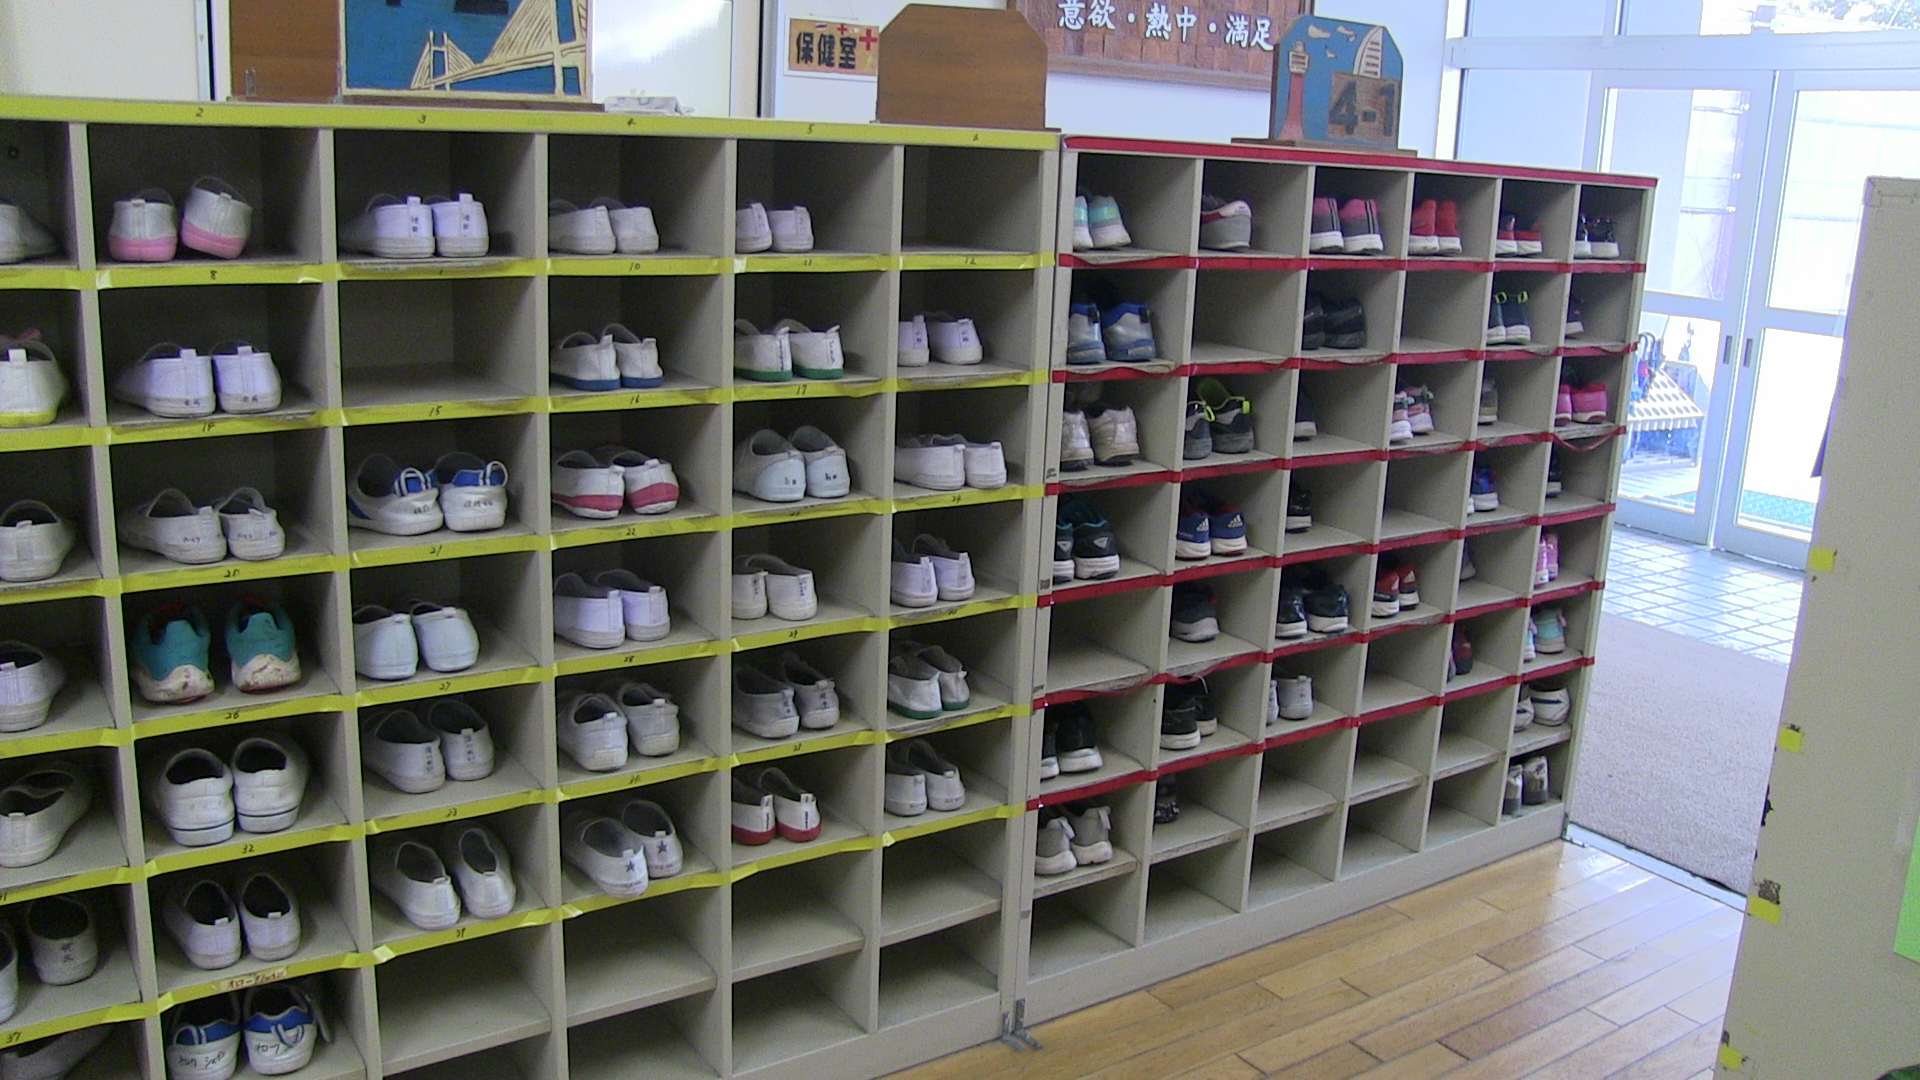 اماكن مخصصة لأحذية التلاميذ حيث يستبدلون أحذيتهم عند الوصول إلى المدرسة بحذاء نظيف ورياضى داخل المدرسة